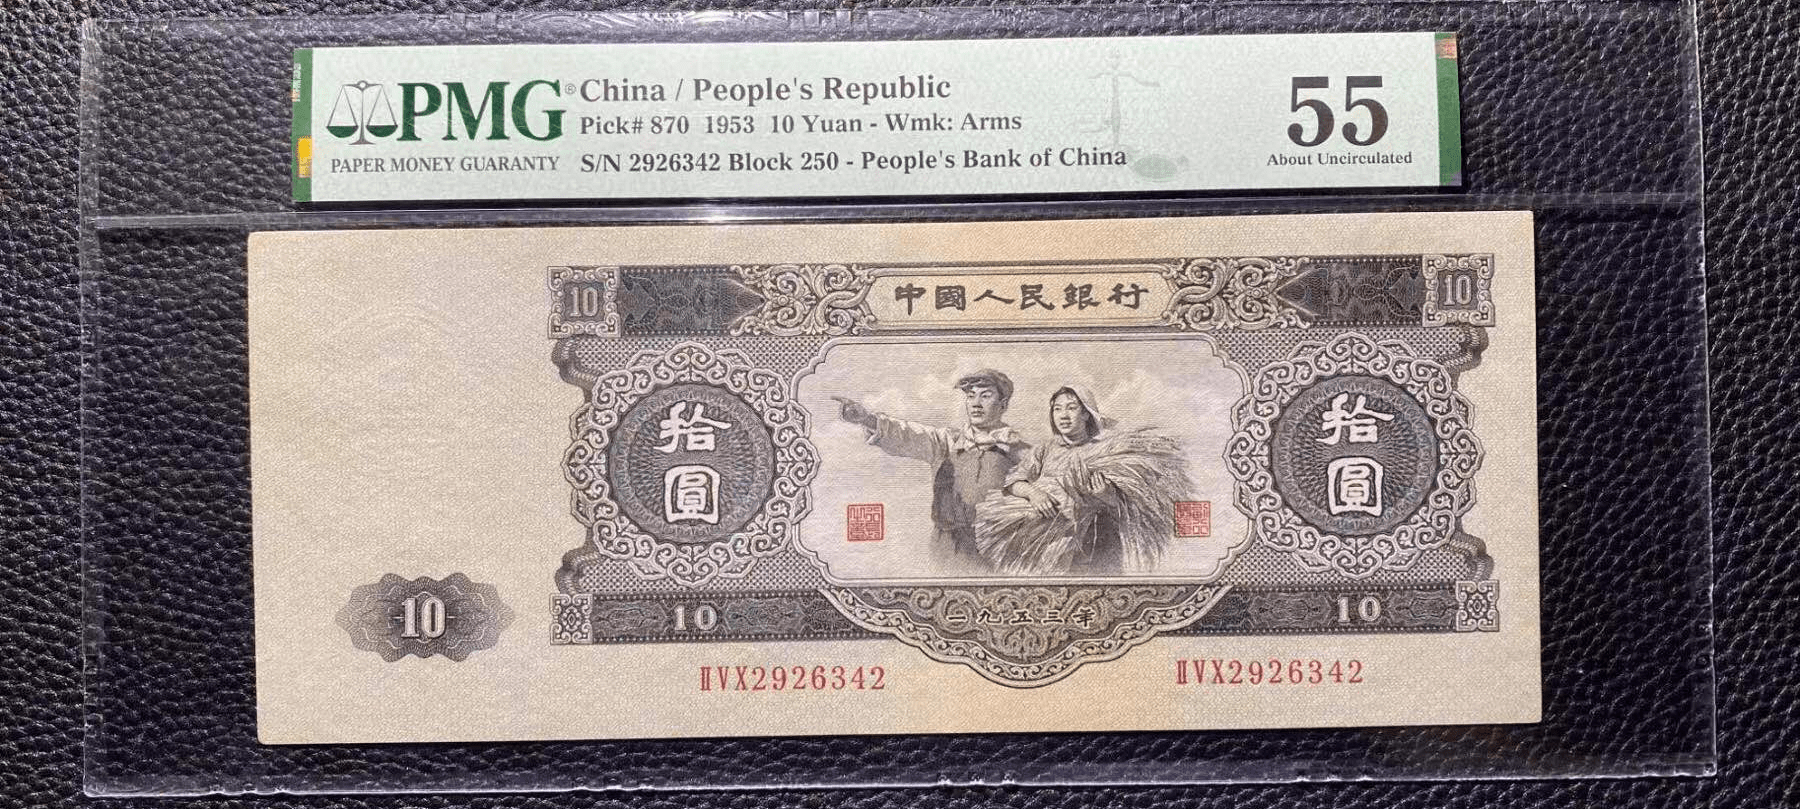 它是第二套人民币里面最大的面值,年号是1953年,现在很多人都没有见过